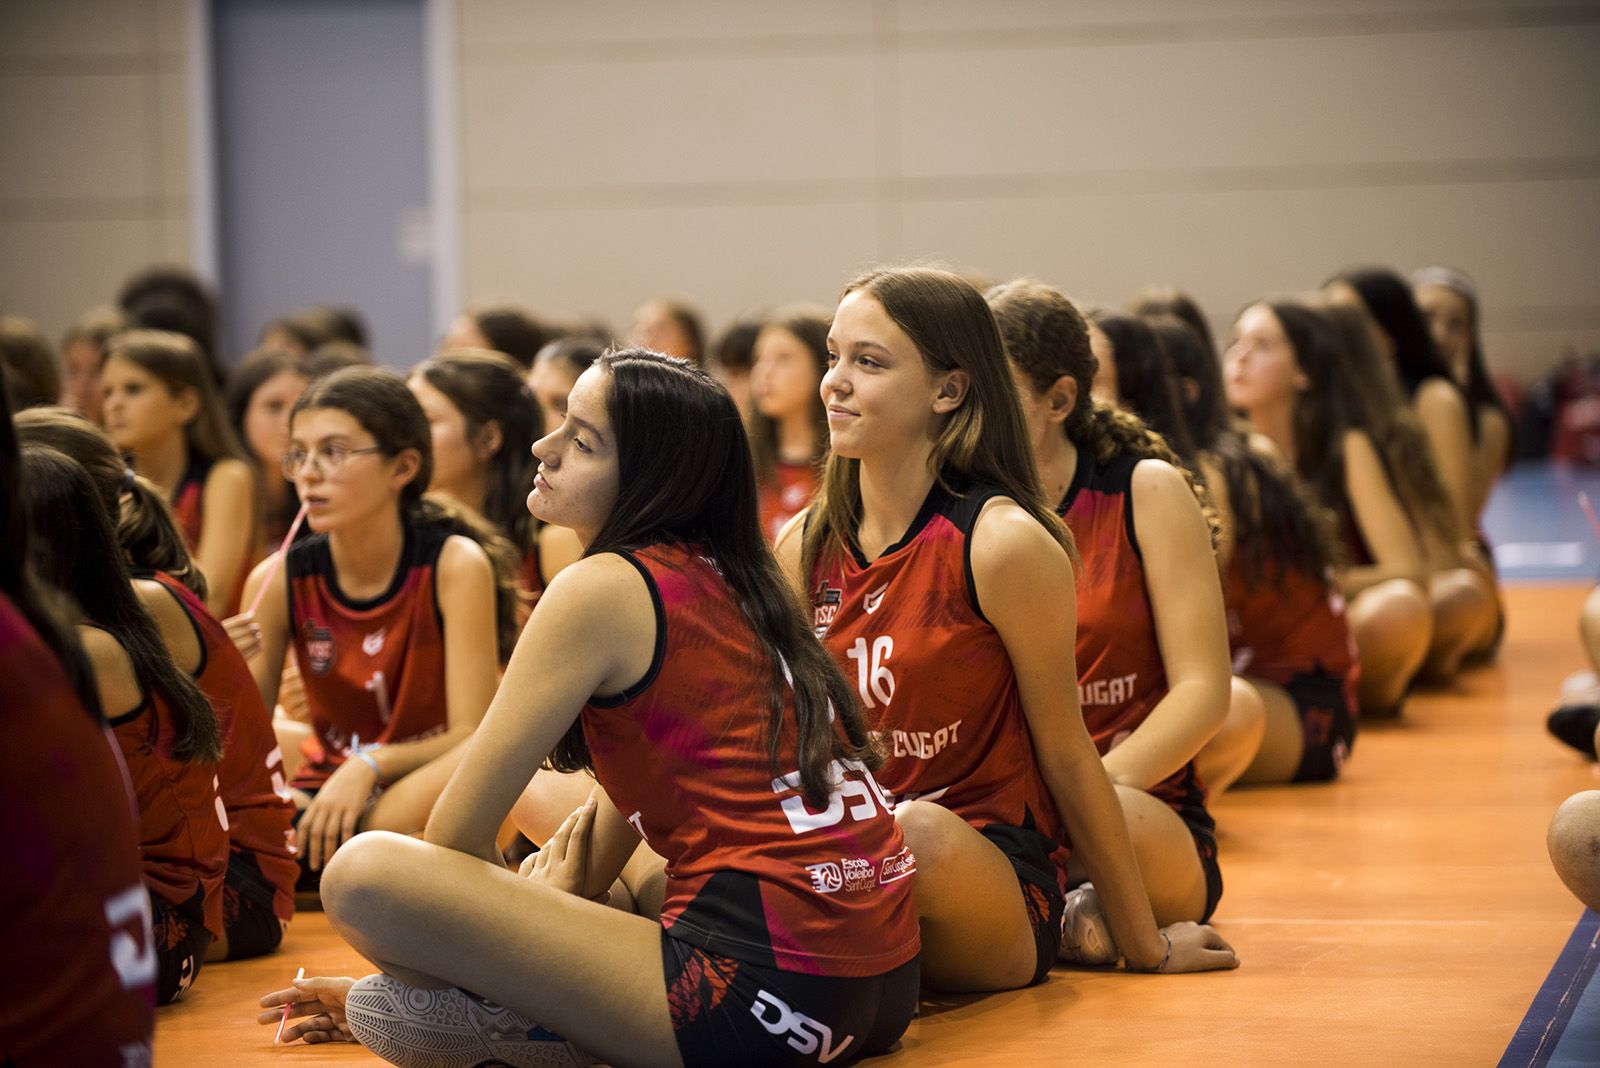 Presentació dels equips del Club Voleibol Sant Cugat. FOTO: Bernat Millet.